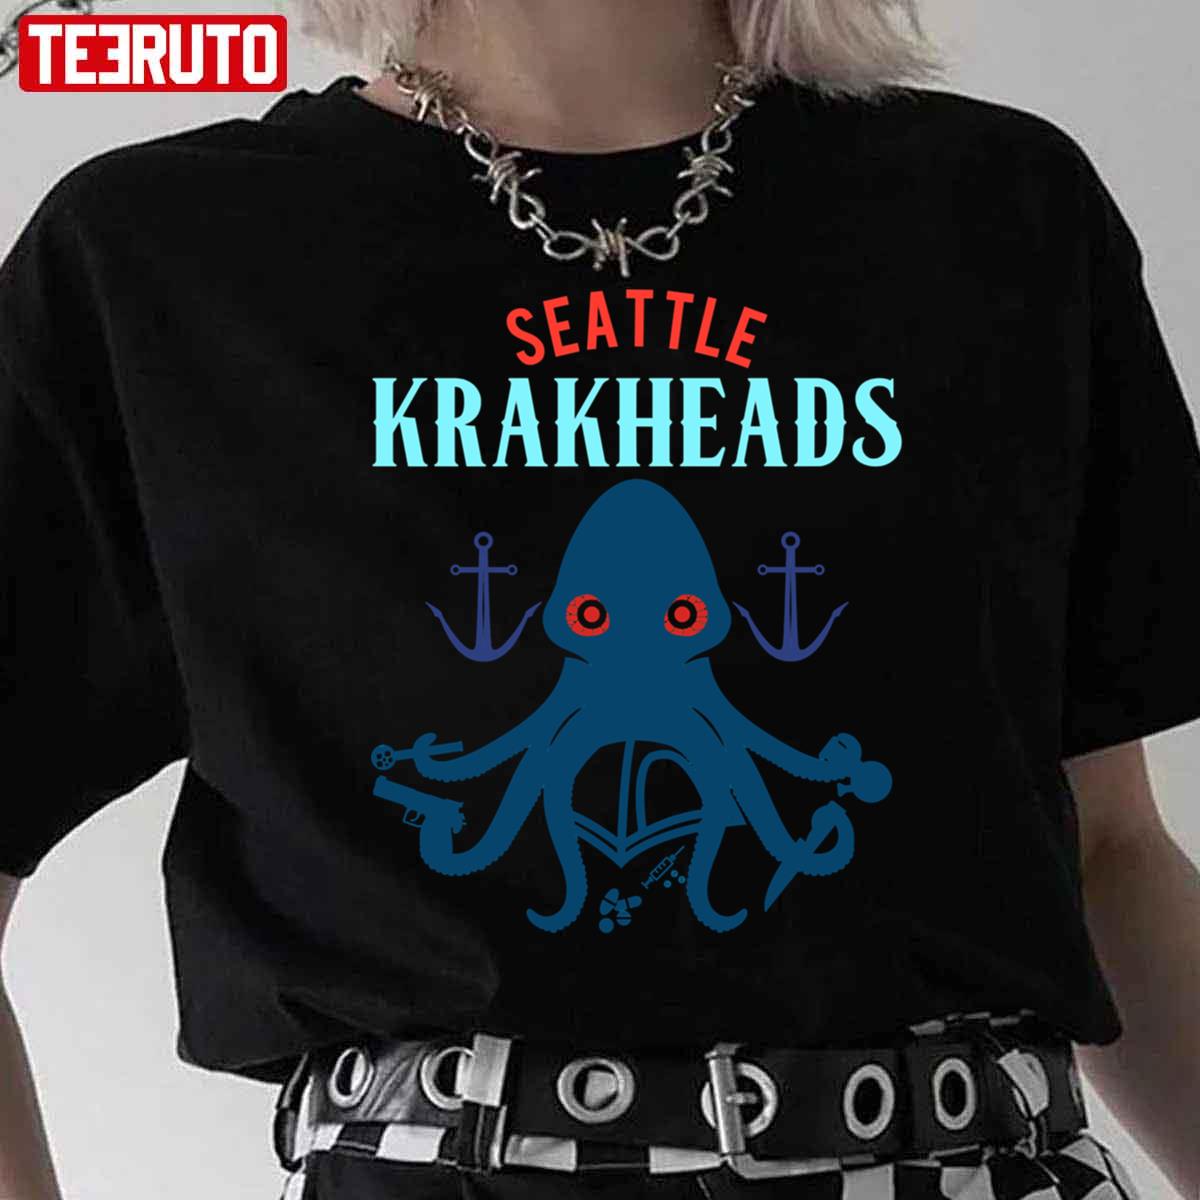 Seattle Krakheads Release The Kraken Unisex T-Shirt